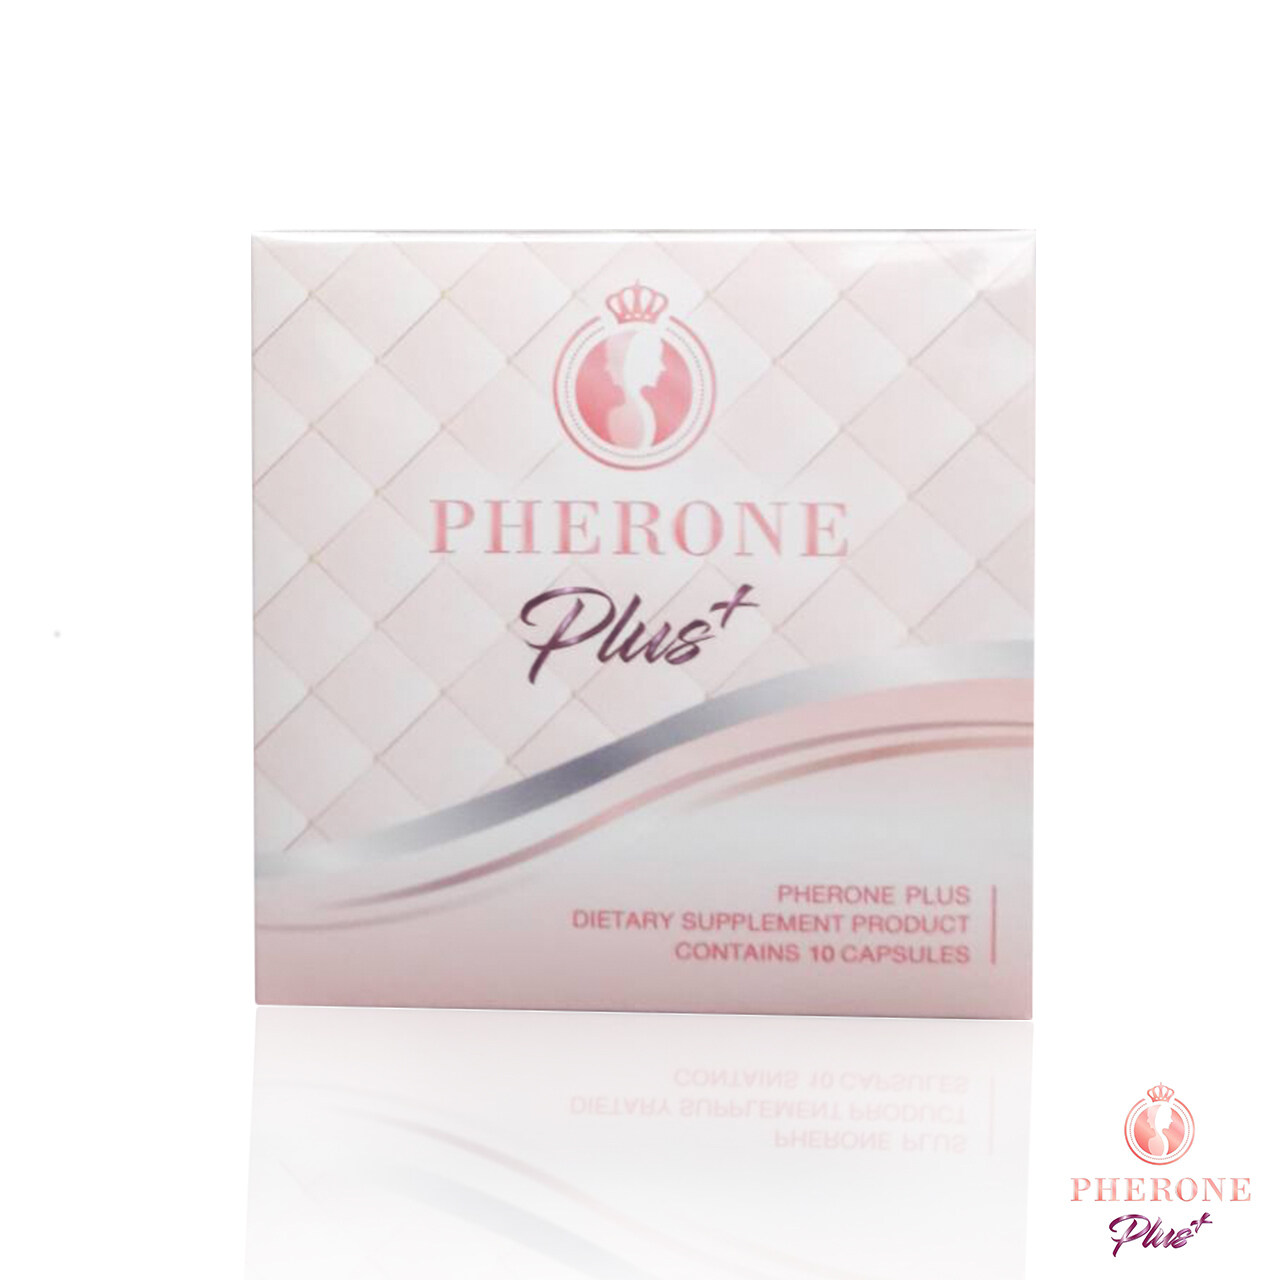 ใหม่ !! Pherone Plus ฟีโรเน่ พลัส (10 แคปซูล) ผลิตภัณฑ์อาหารเสริมเพิ่มฮอร์โมน เพื่อผิวละมุน